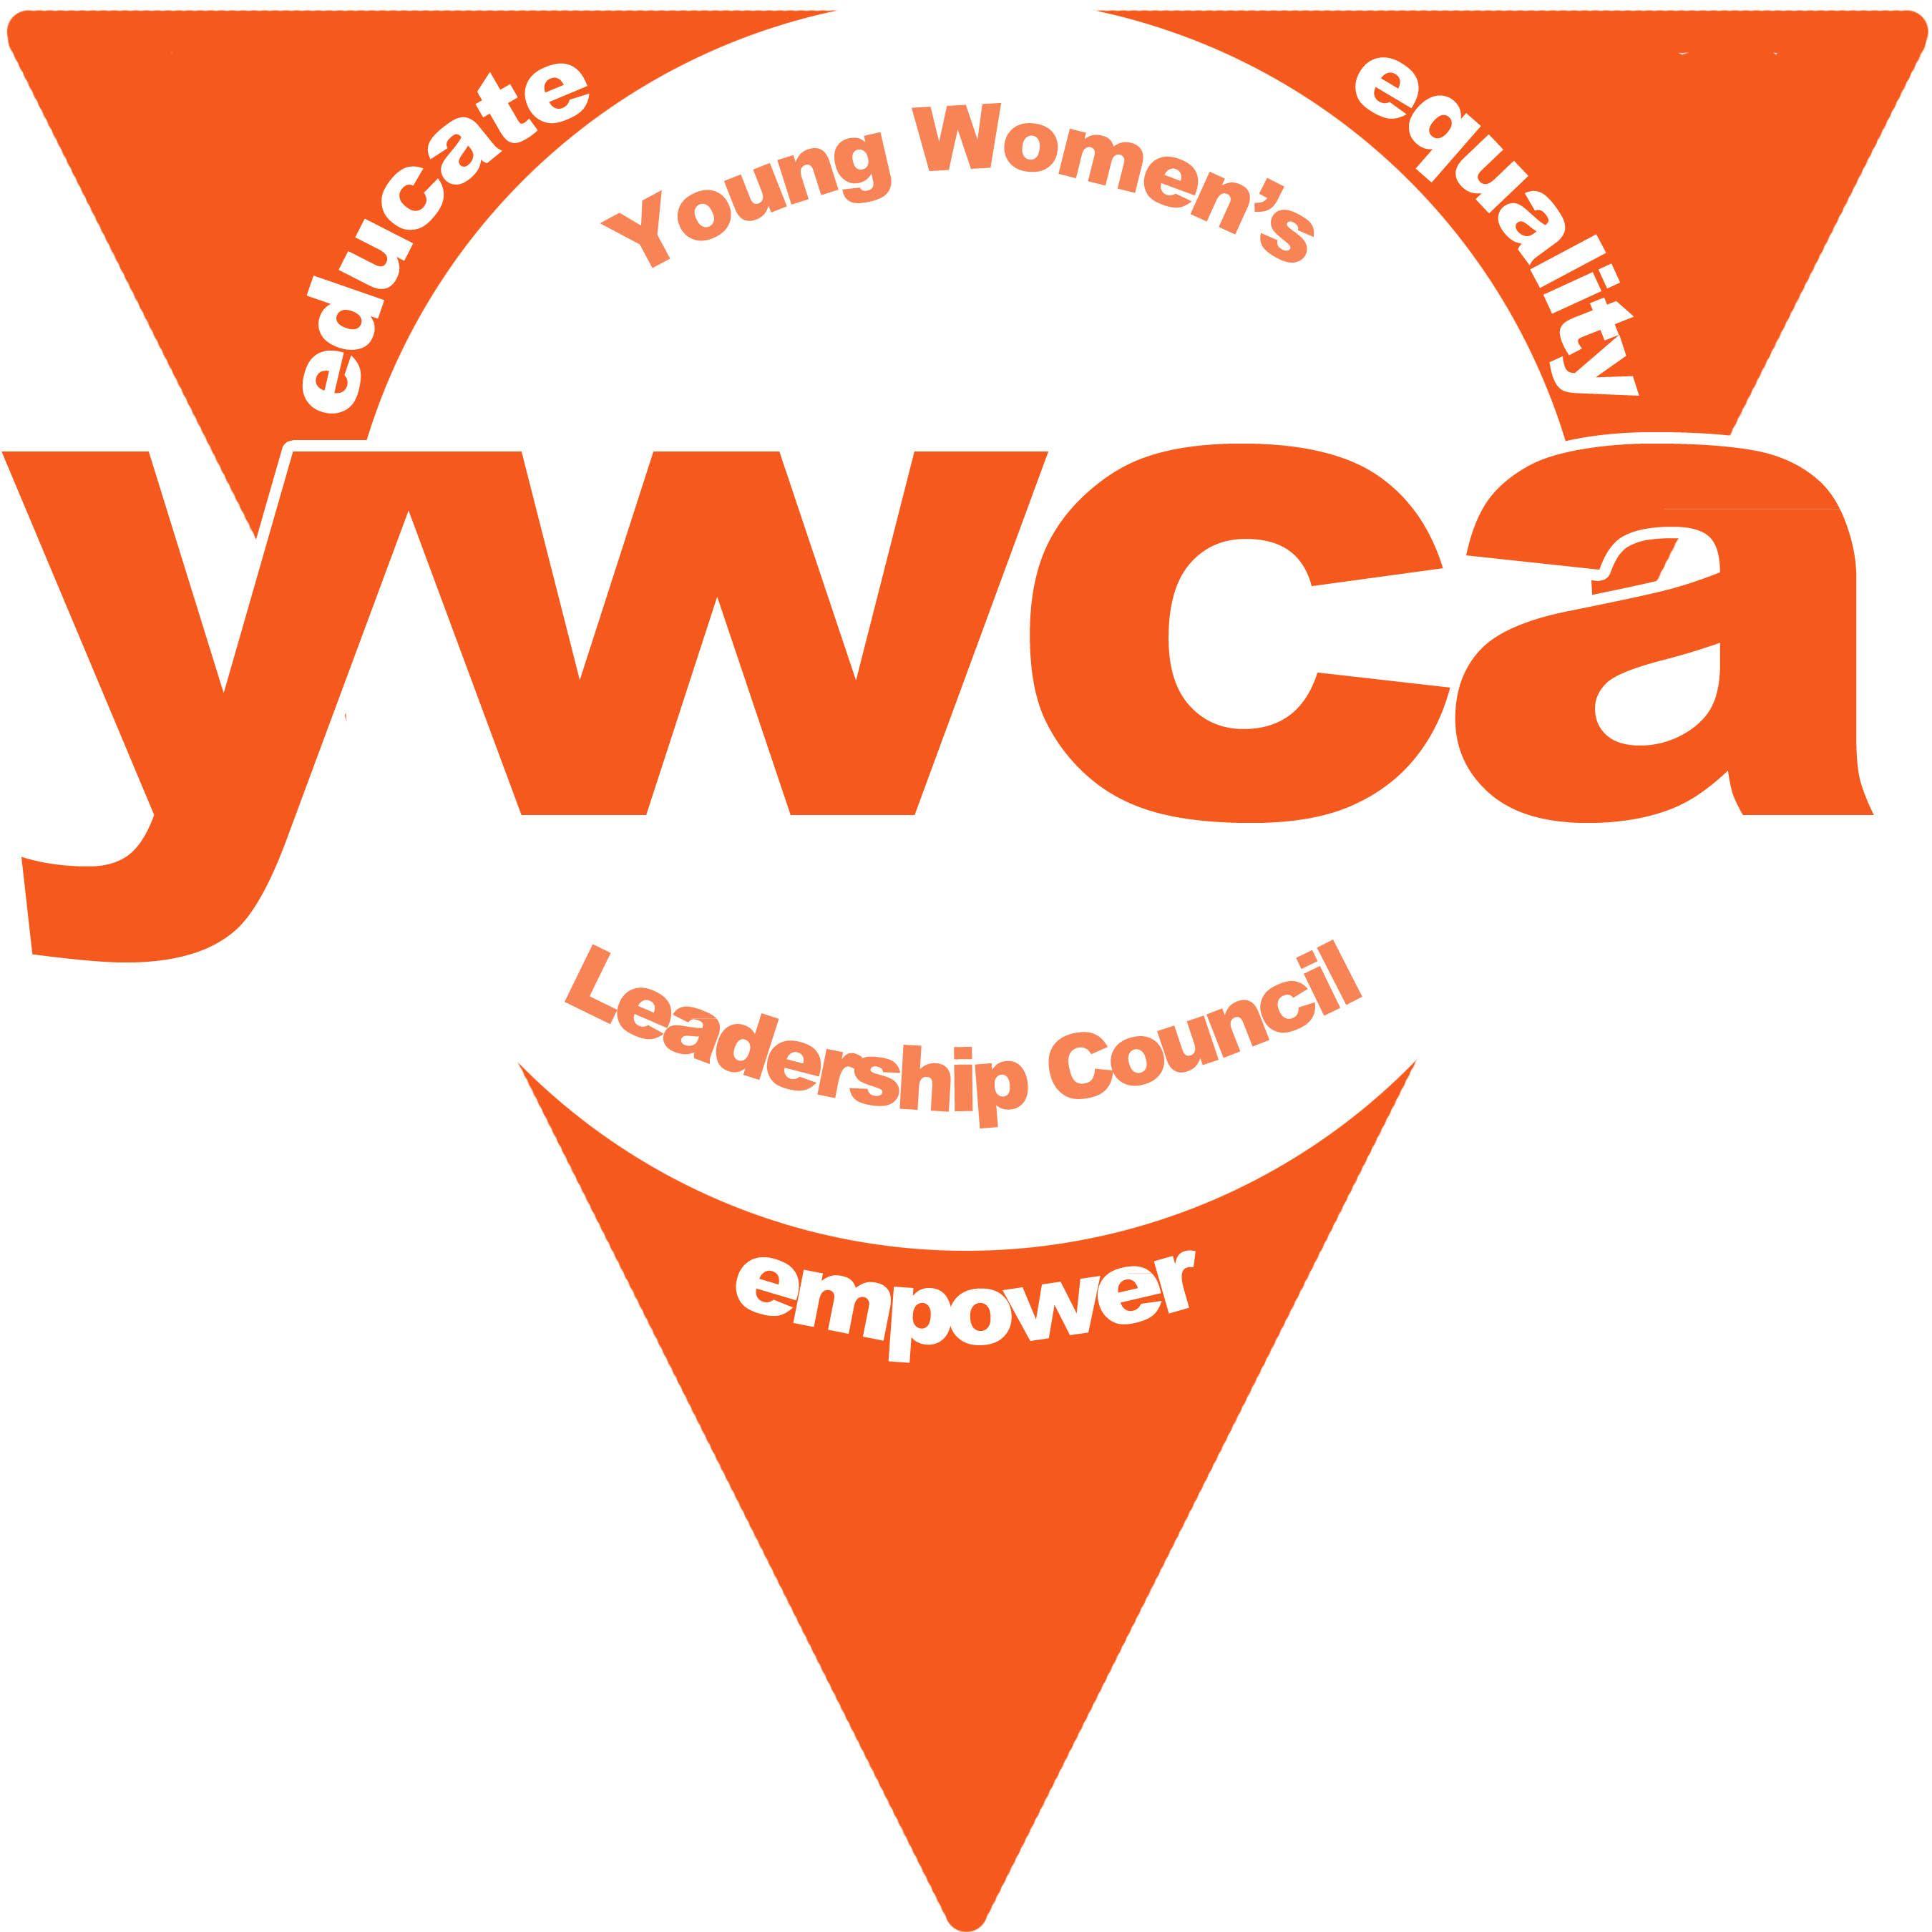 YWCA Logo - YWCA logo | carbonmutt